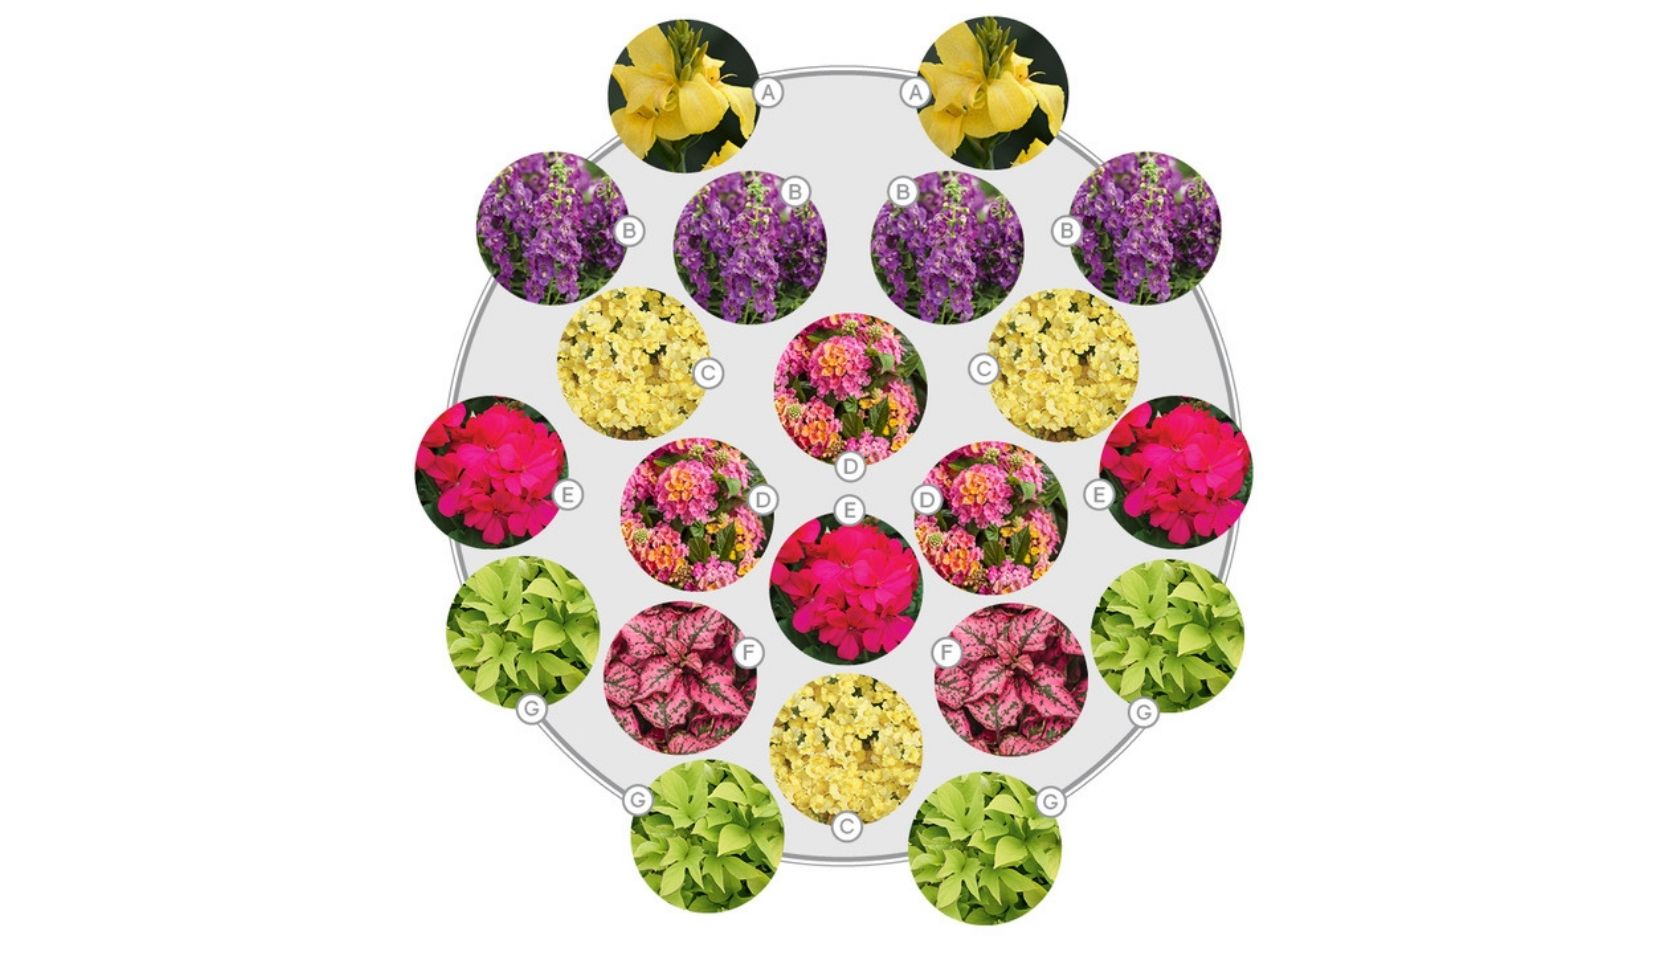 schéma représentant un modèle d'arrangement floral contenant des fleurs tropicales